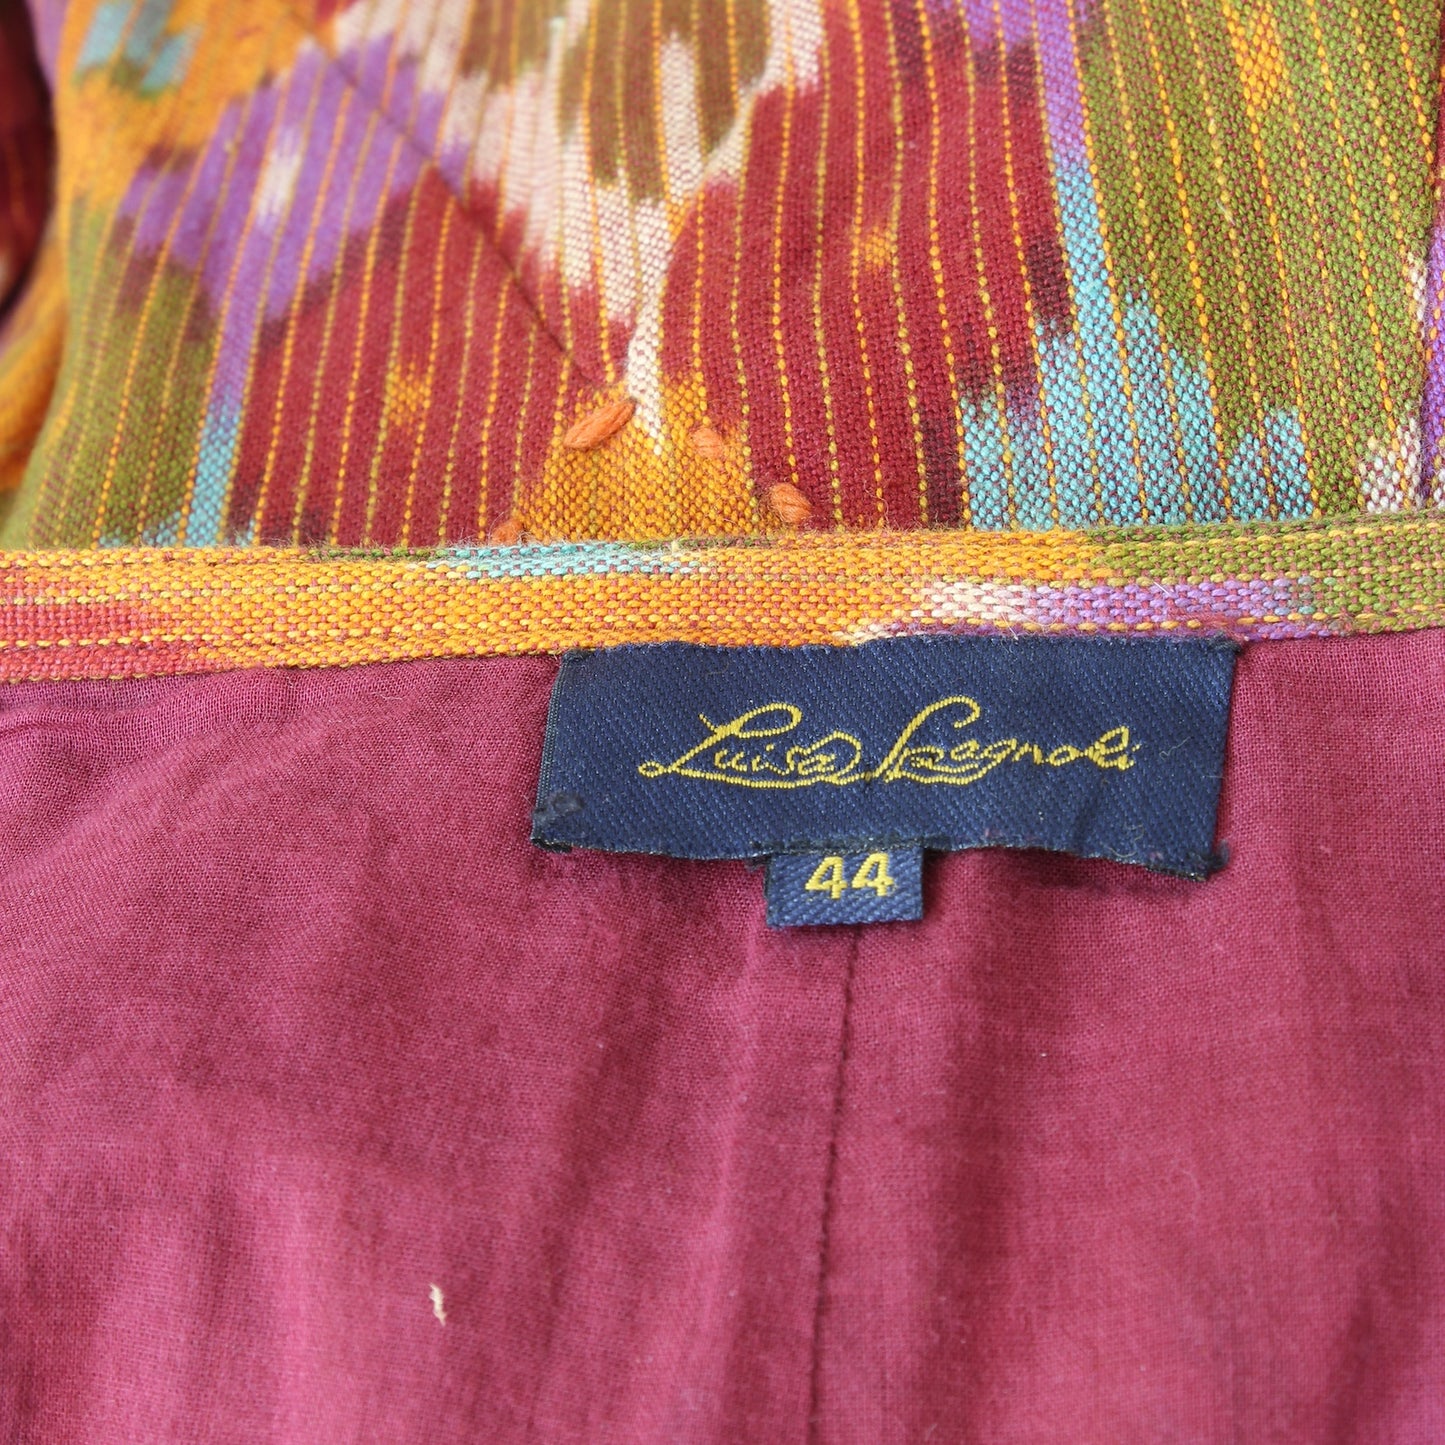 Luisa Spagnoli Orange Embroidered Long Skirt Vintage